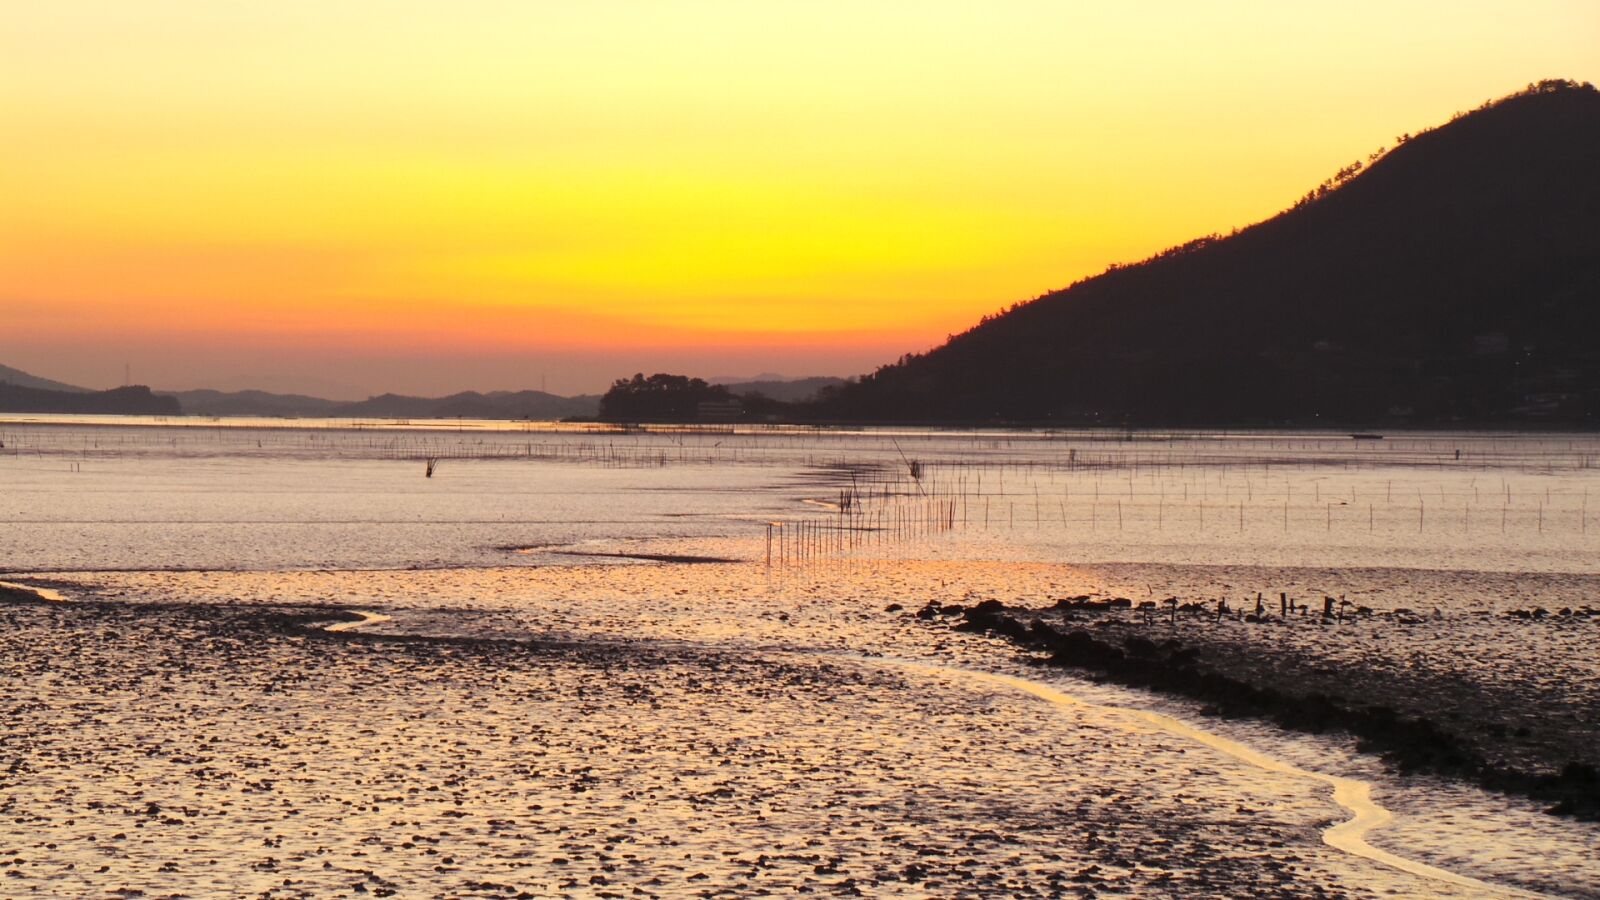 Samsung Galaxy Camera (Wi-Fi) sample photo. Suncheon bay, sunset, tidal photography